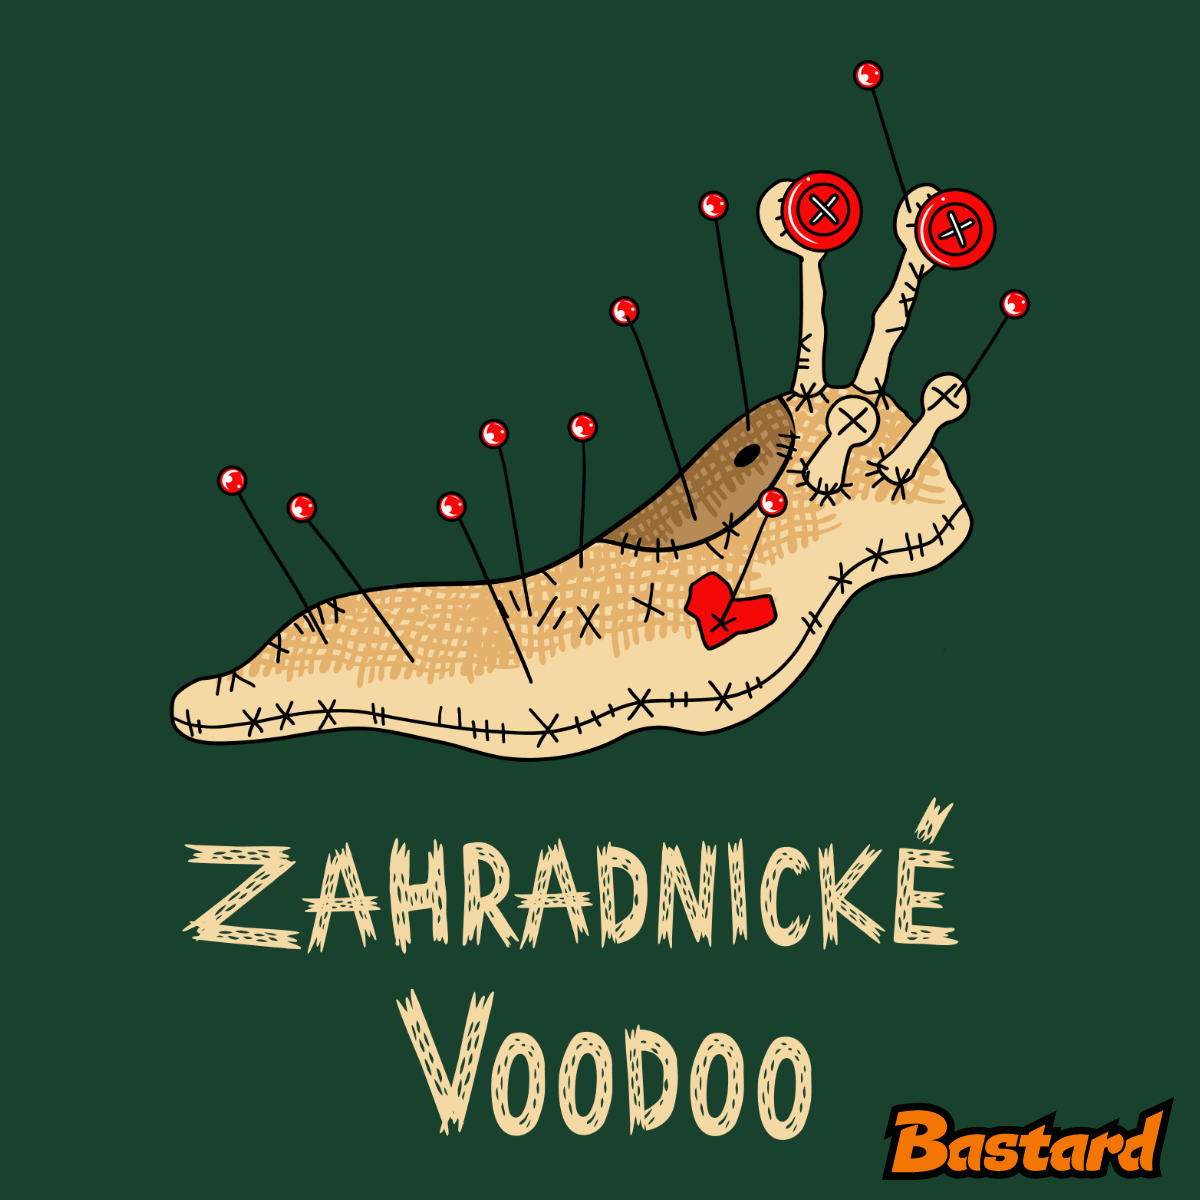 Zahradnické voodoo